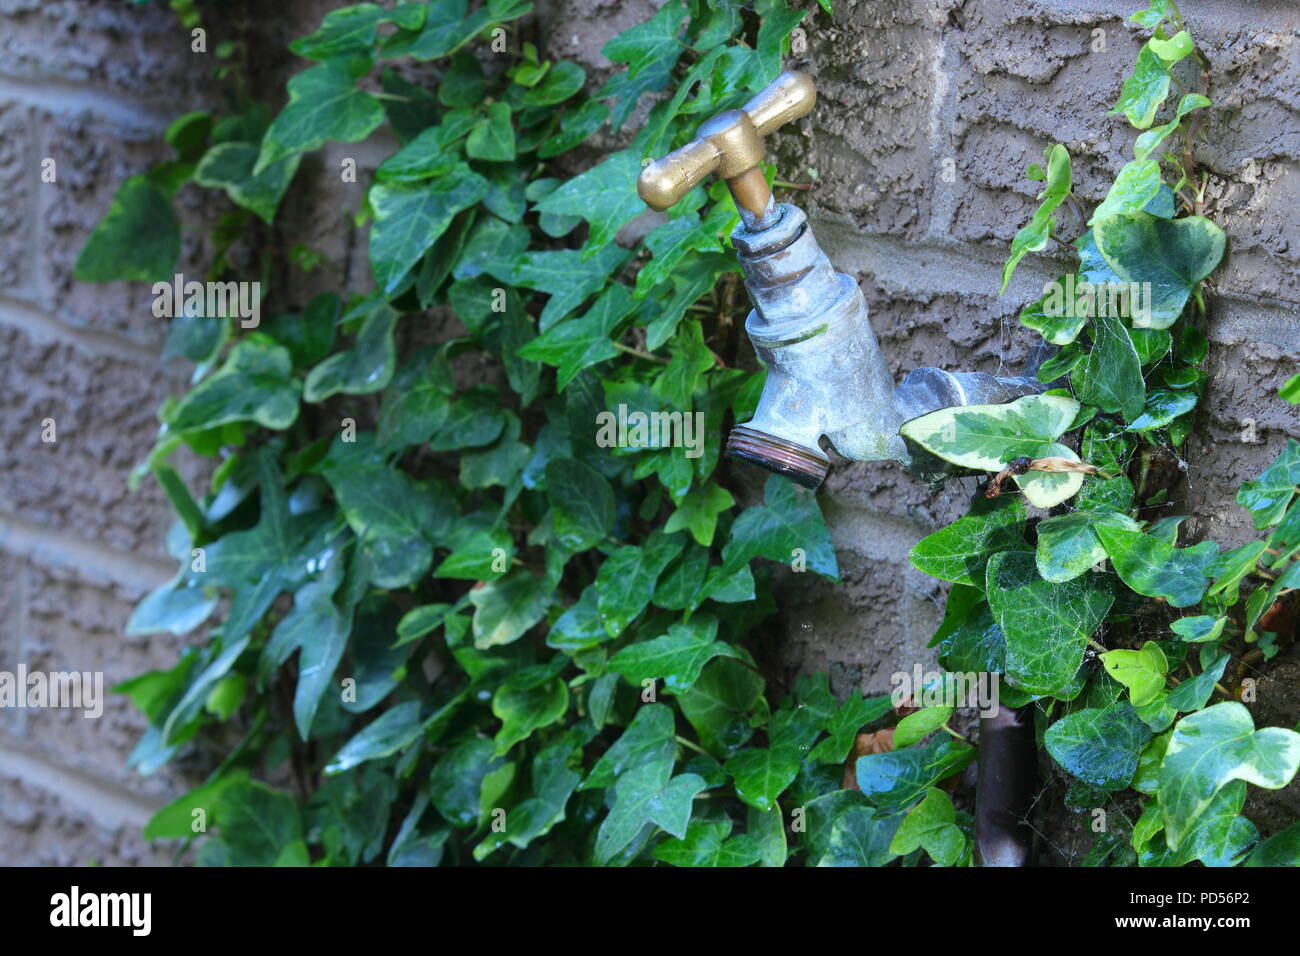 An outdoor garden tap run dry Stock Photo